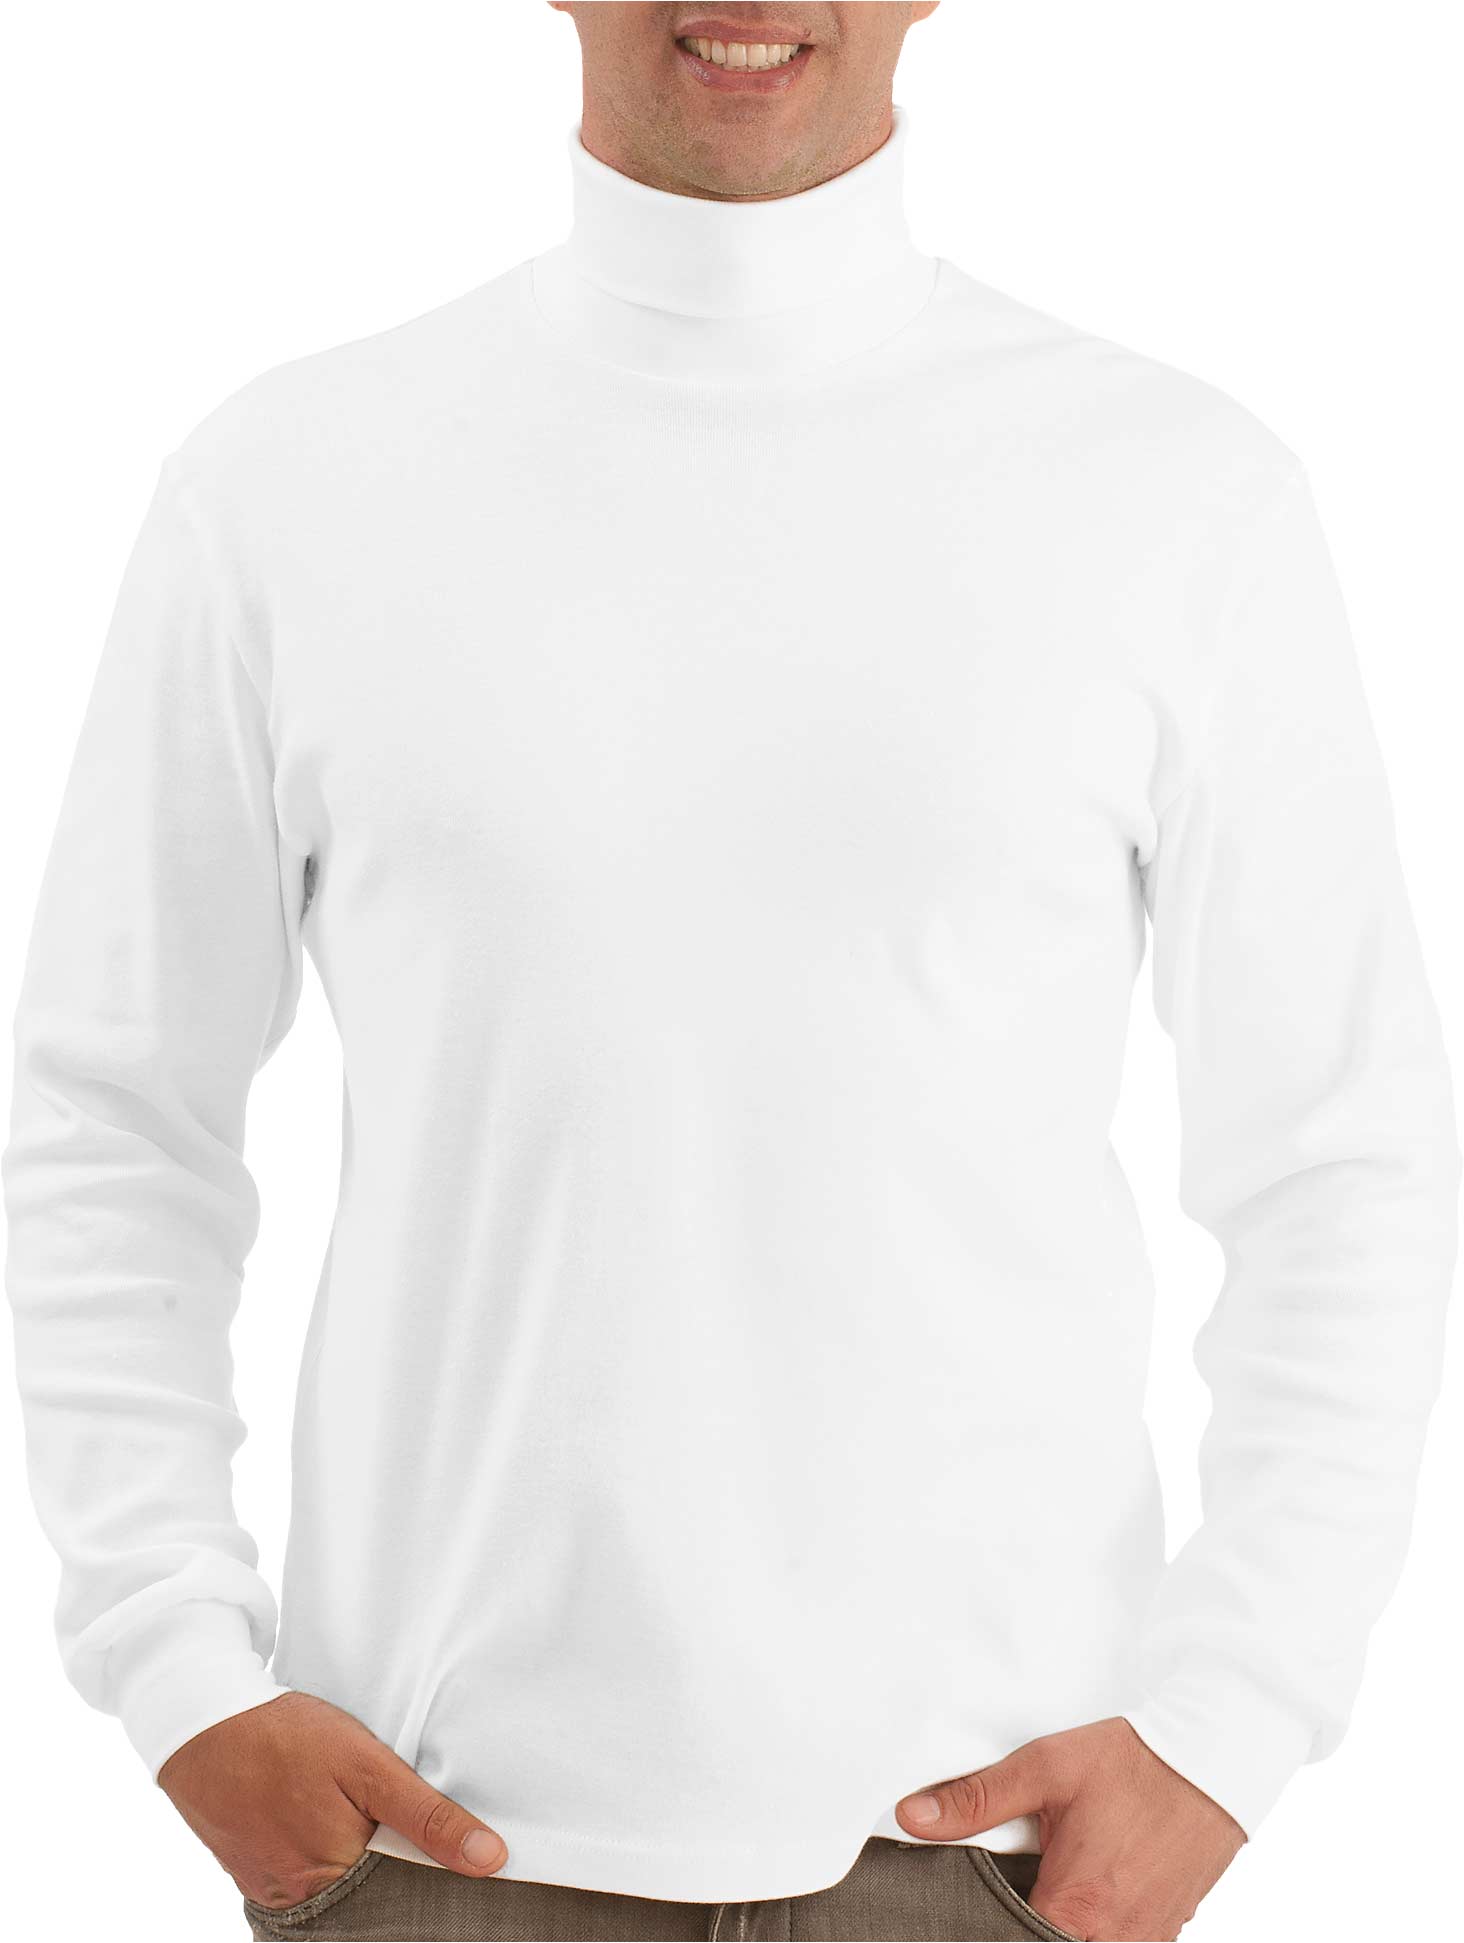 Rollkragen Shirt weiss - 100% Baumwolle für Herren - Trigema